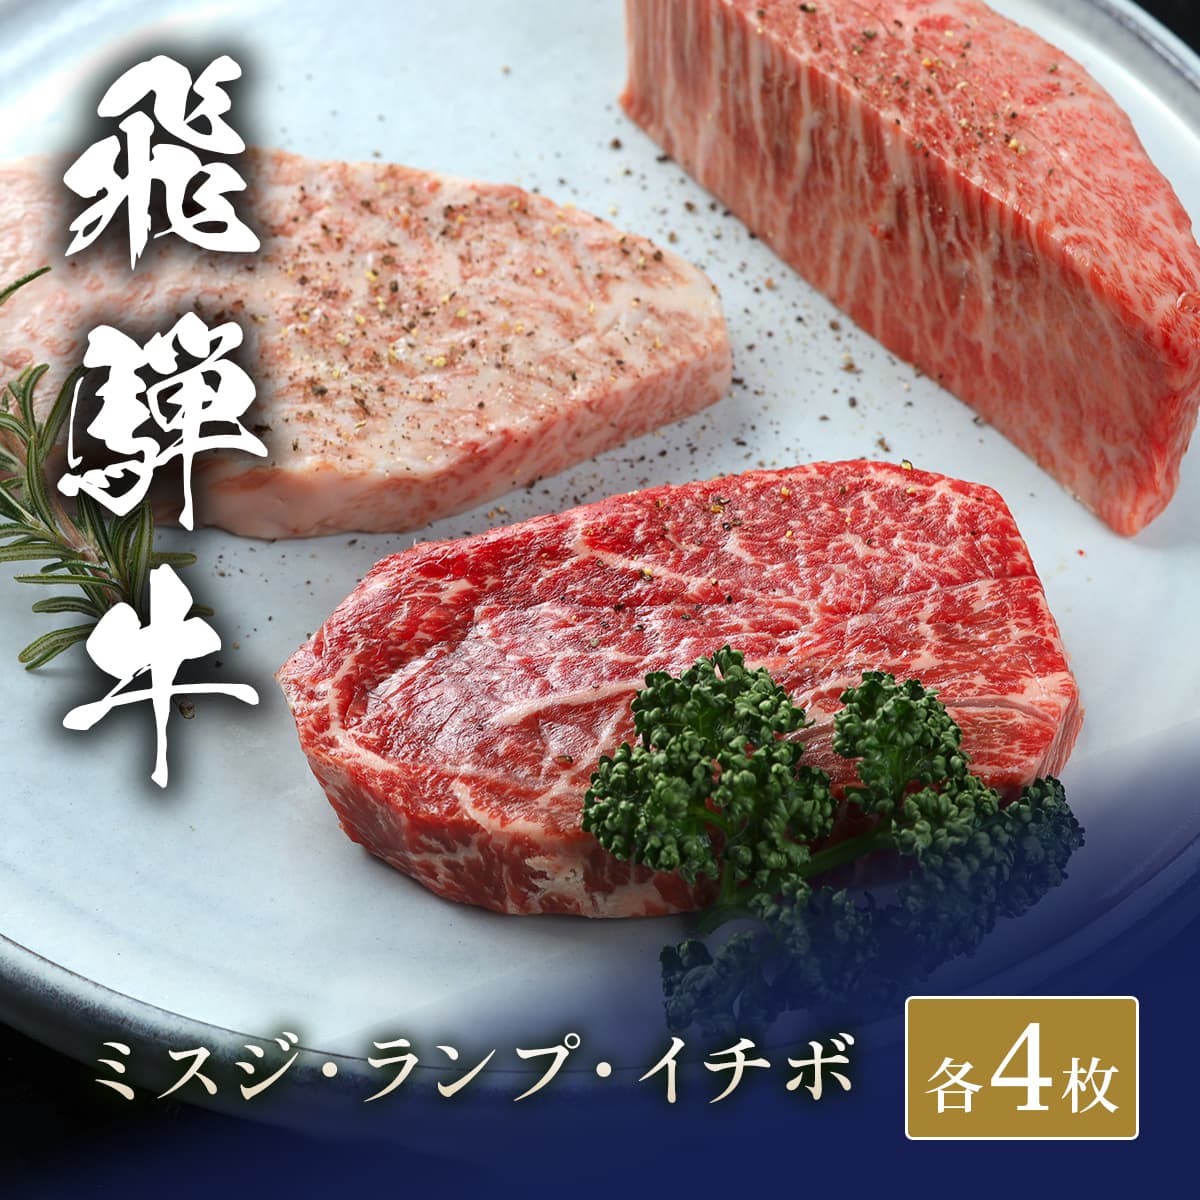 飛騨牛 ステーキ3種食べ比べ イチボ&ランプ&ミスジ x 各4枚